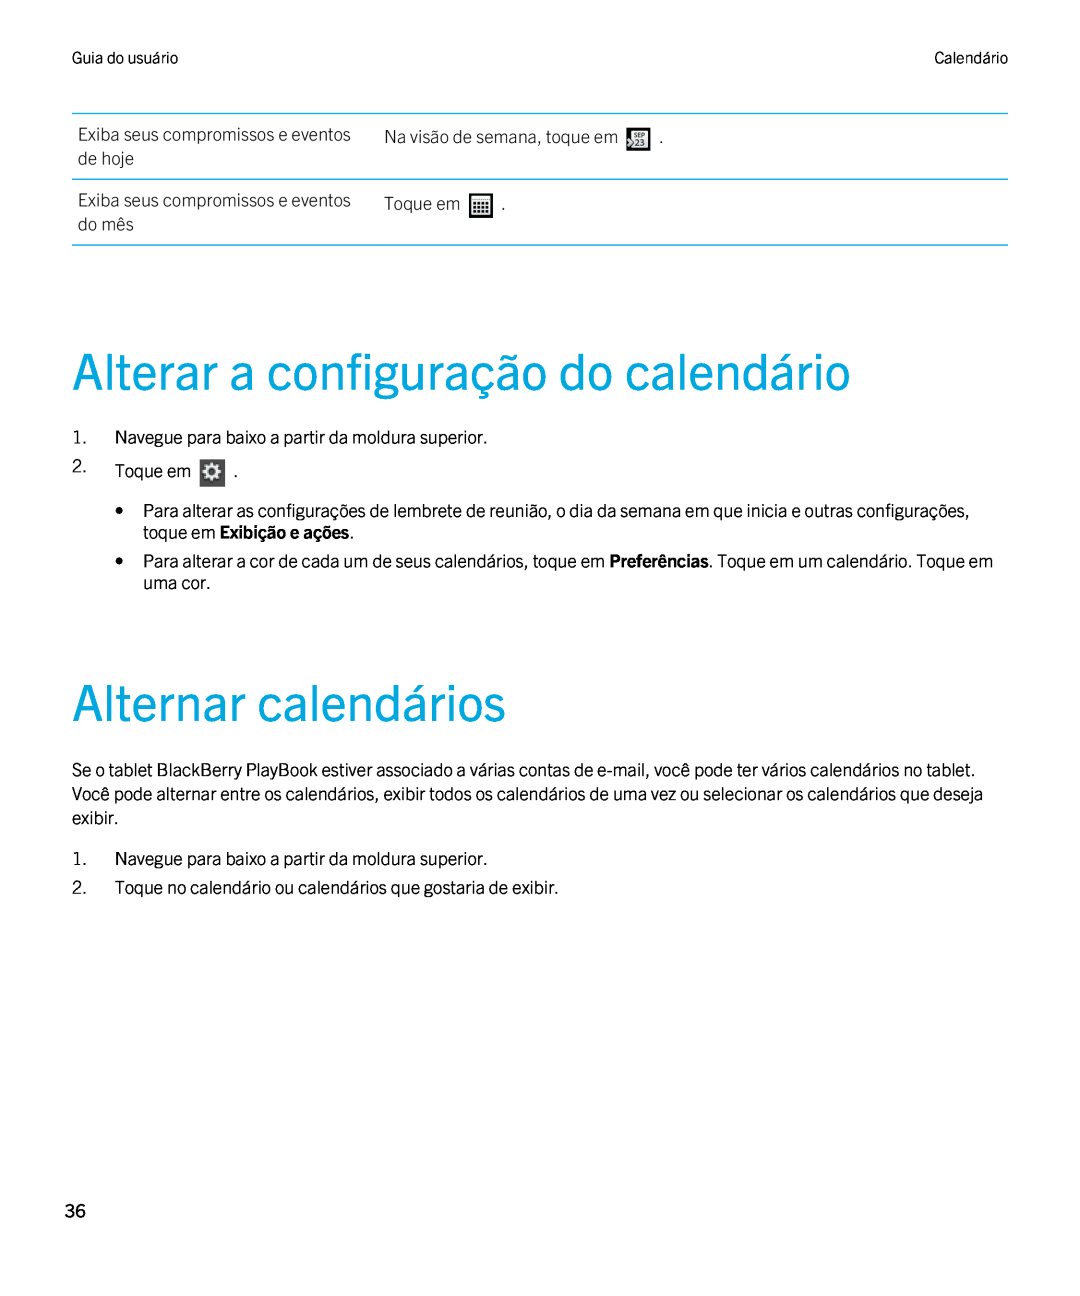 Blackberry 2.0.1 manual Alterar a configuração do calendário, Alternar calendários, Guia do usuárioCalendário 